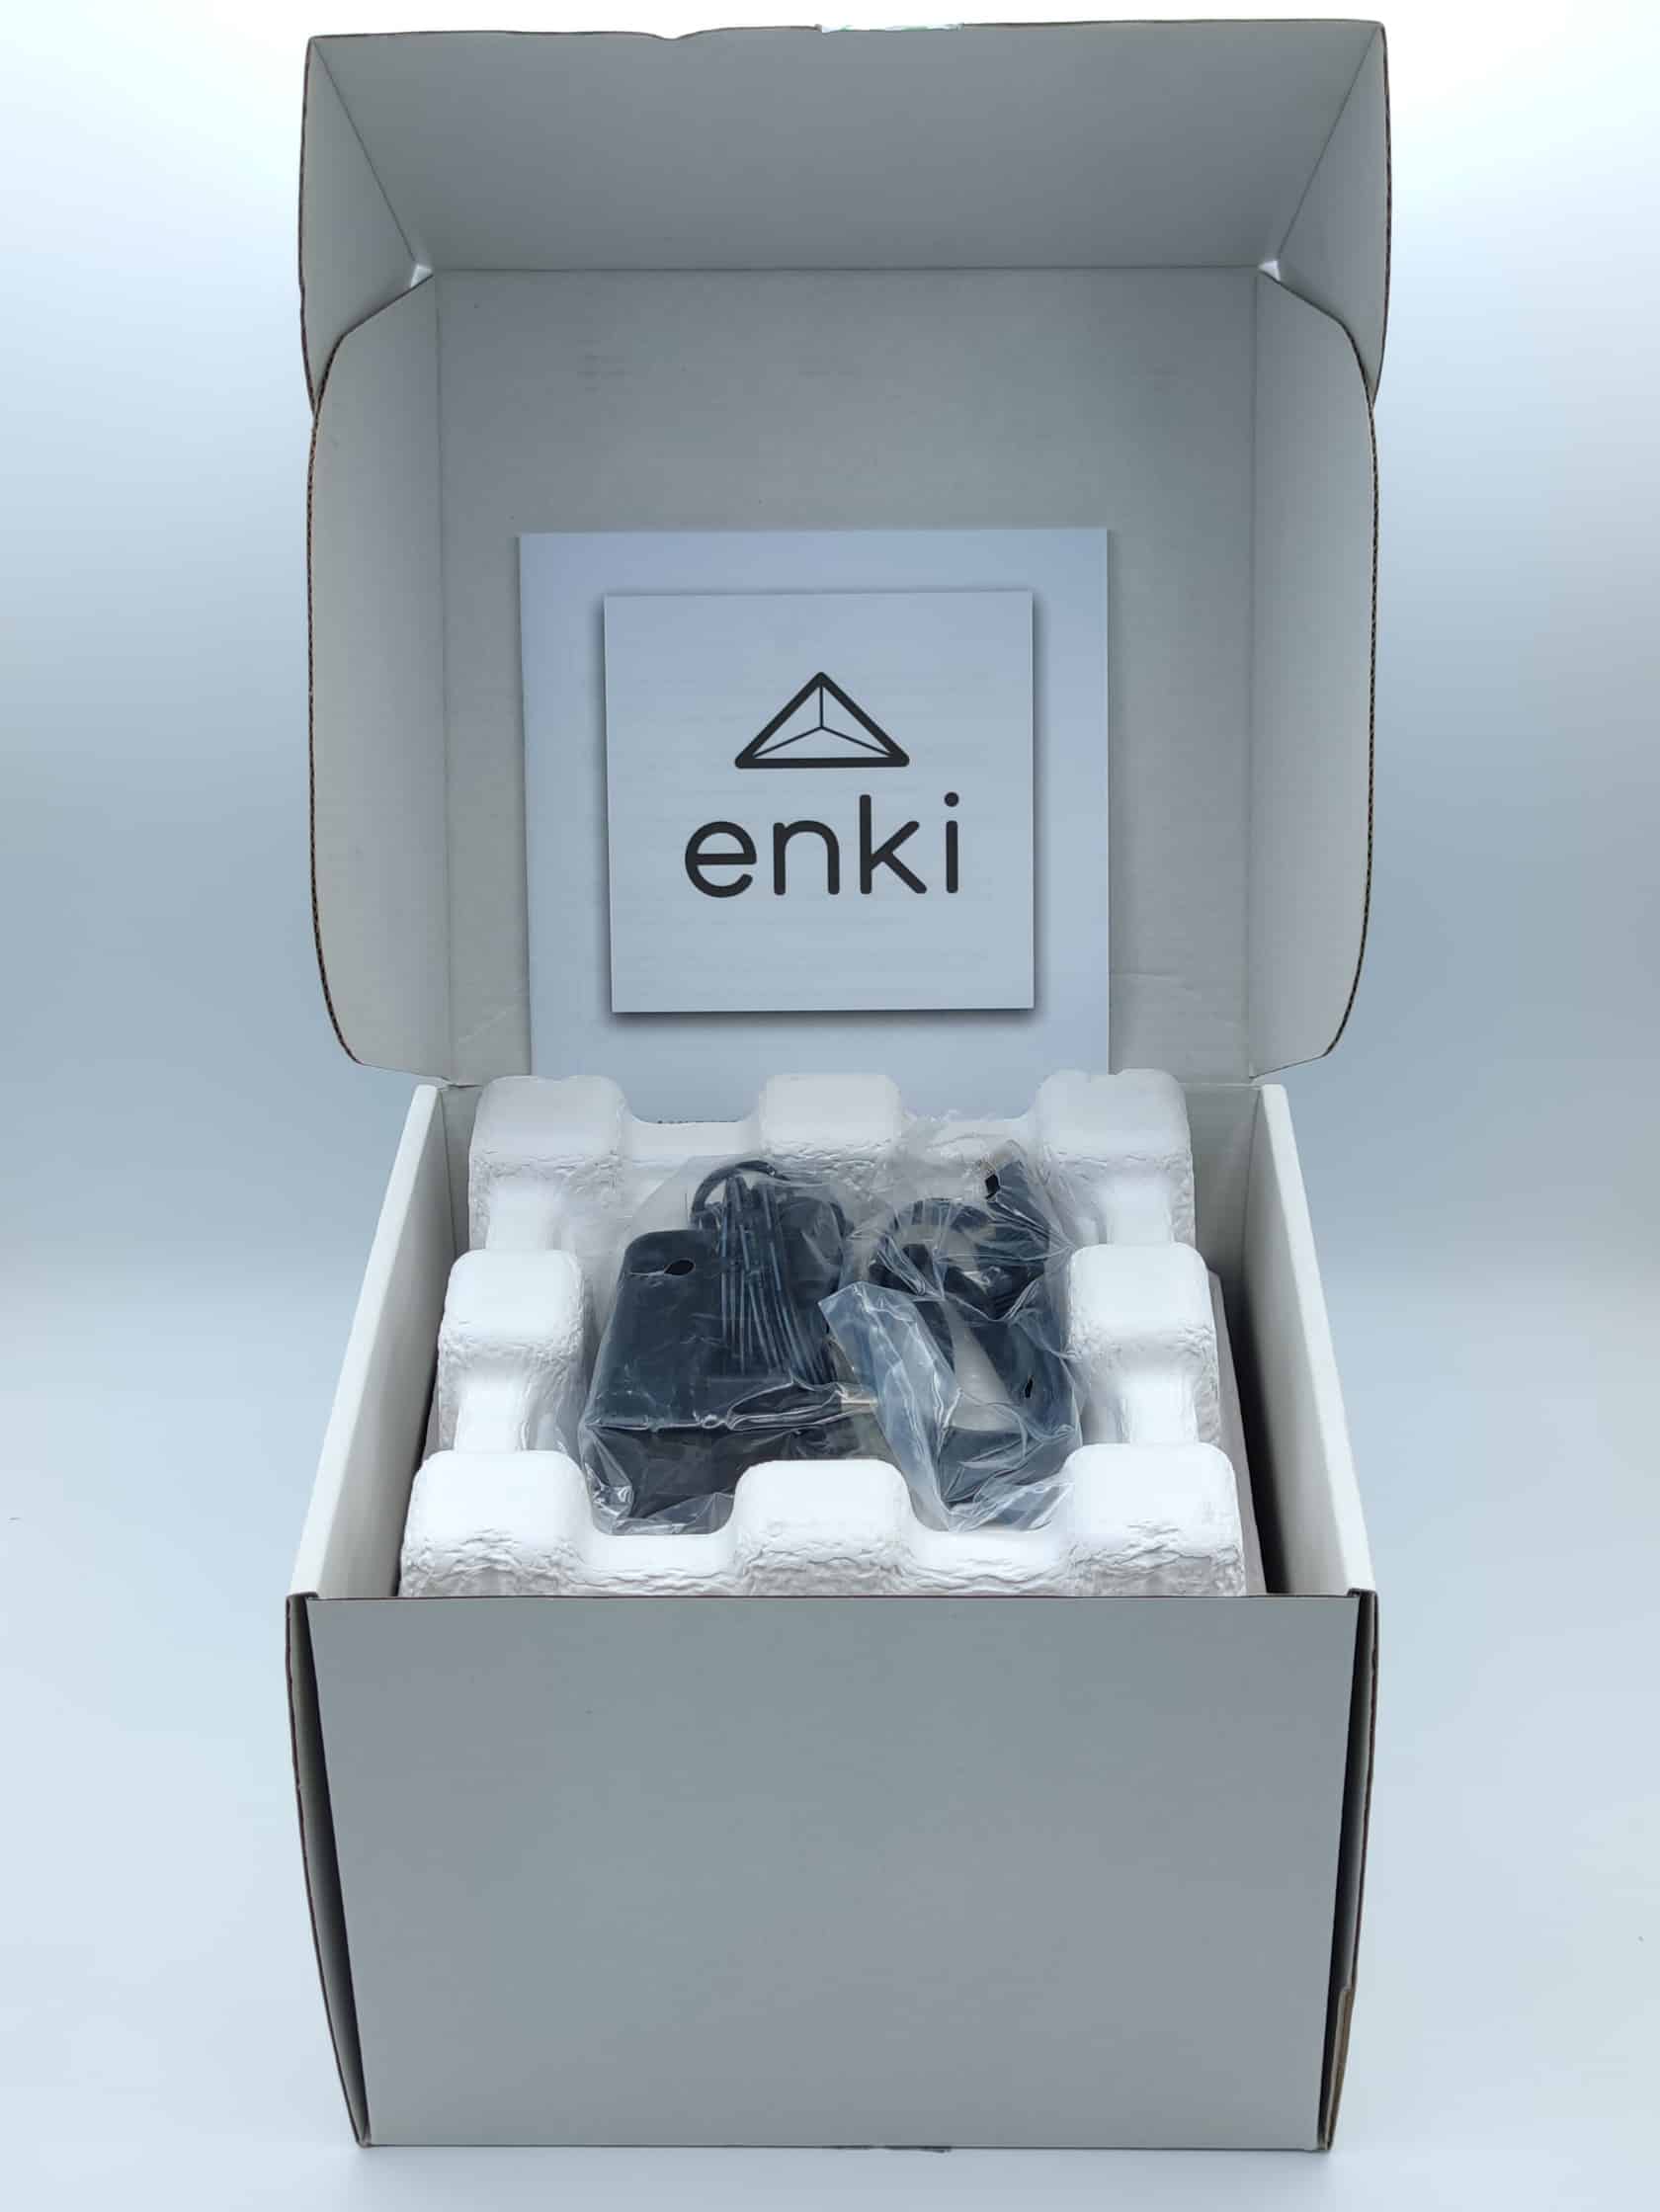 Leroy Merlin lance Enki Connect, une box domotique Zigbee à 29€ seulement